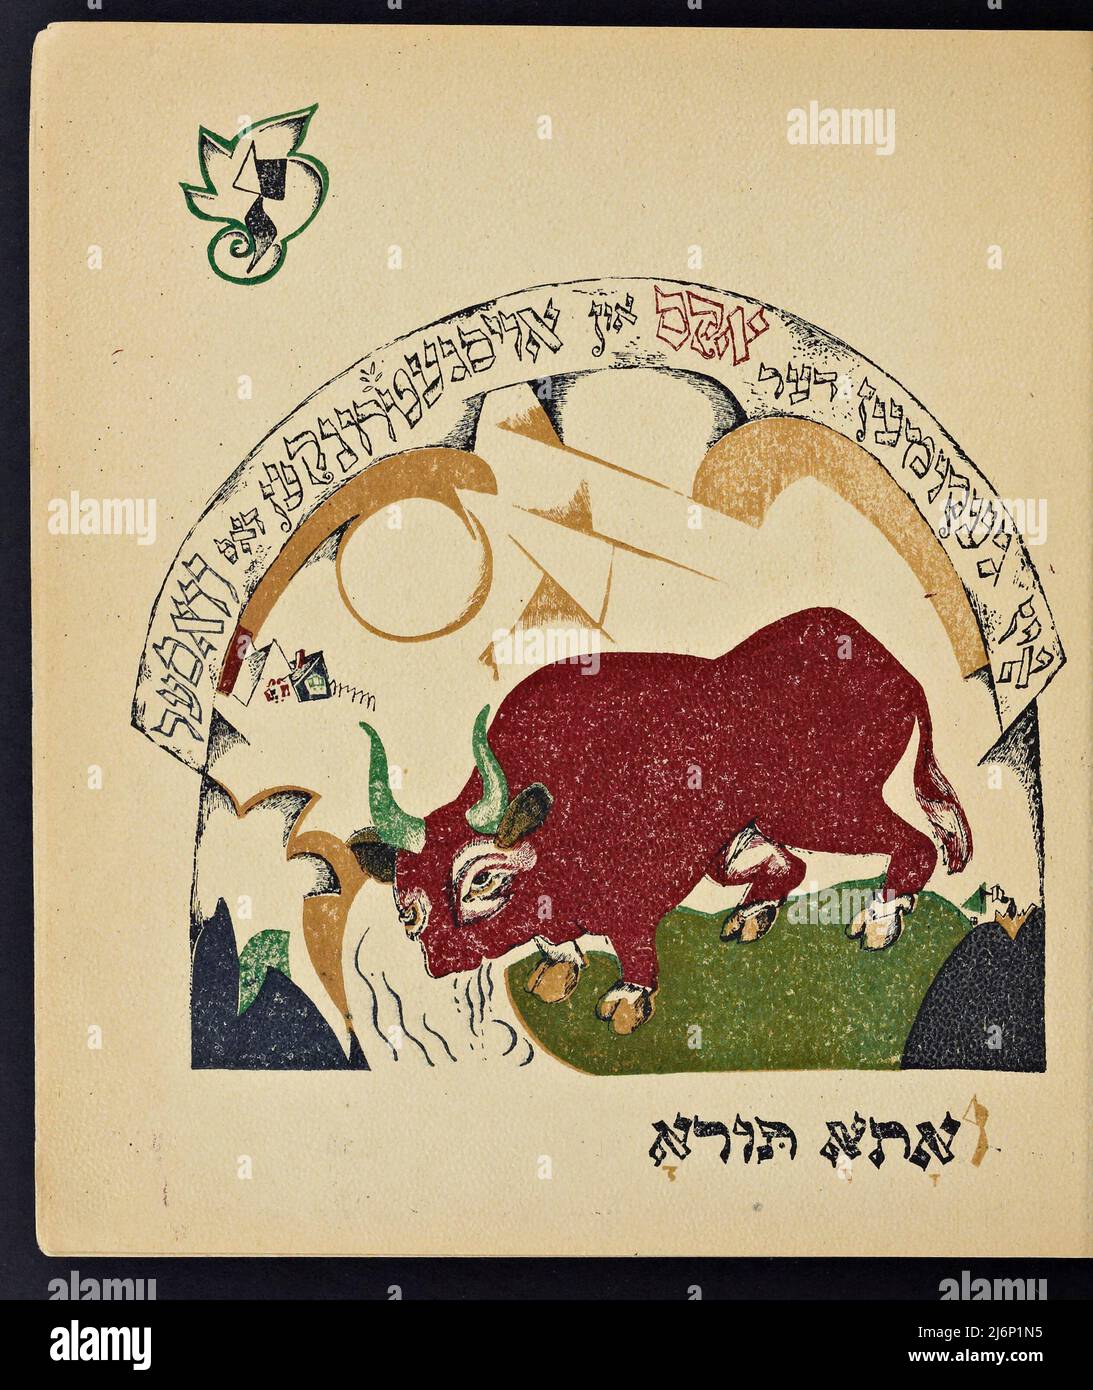 Illustrierte jiddische Version des von El Lissitzky (Lazar Markovich Lissitzky) illustrierten Kinderbuchs von Had Gadya, das 1919 in Kiew veröffentlicht wurde Chad Gadya oder Had Gadya ('eine kleine Ziege oder 'ein Kind') ist ein verspieltes Sammellied auf Aramäisch und Hebräisch. Es wird am Ende des Passahfestes Seder gesungen, dem jüdischen Ritualfest, das den Beginn des jüdischen Passahfestes markiert. Die Melodie mag ihre Wurzeln in der mittelalterlichen deutschen Volksmusik haben. Sie erschien erstmals 1590 in einer Haggada, die in Prag gedruckt wurde, und ist damit die jüngste Aufnahme in die traditionelle Passahsederliturgie Stockfoto